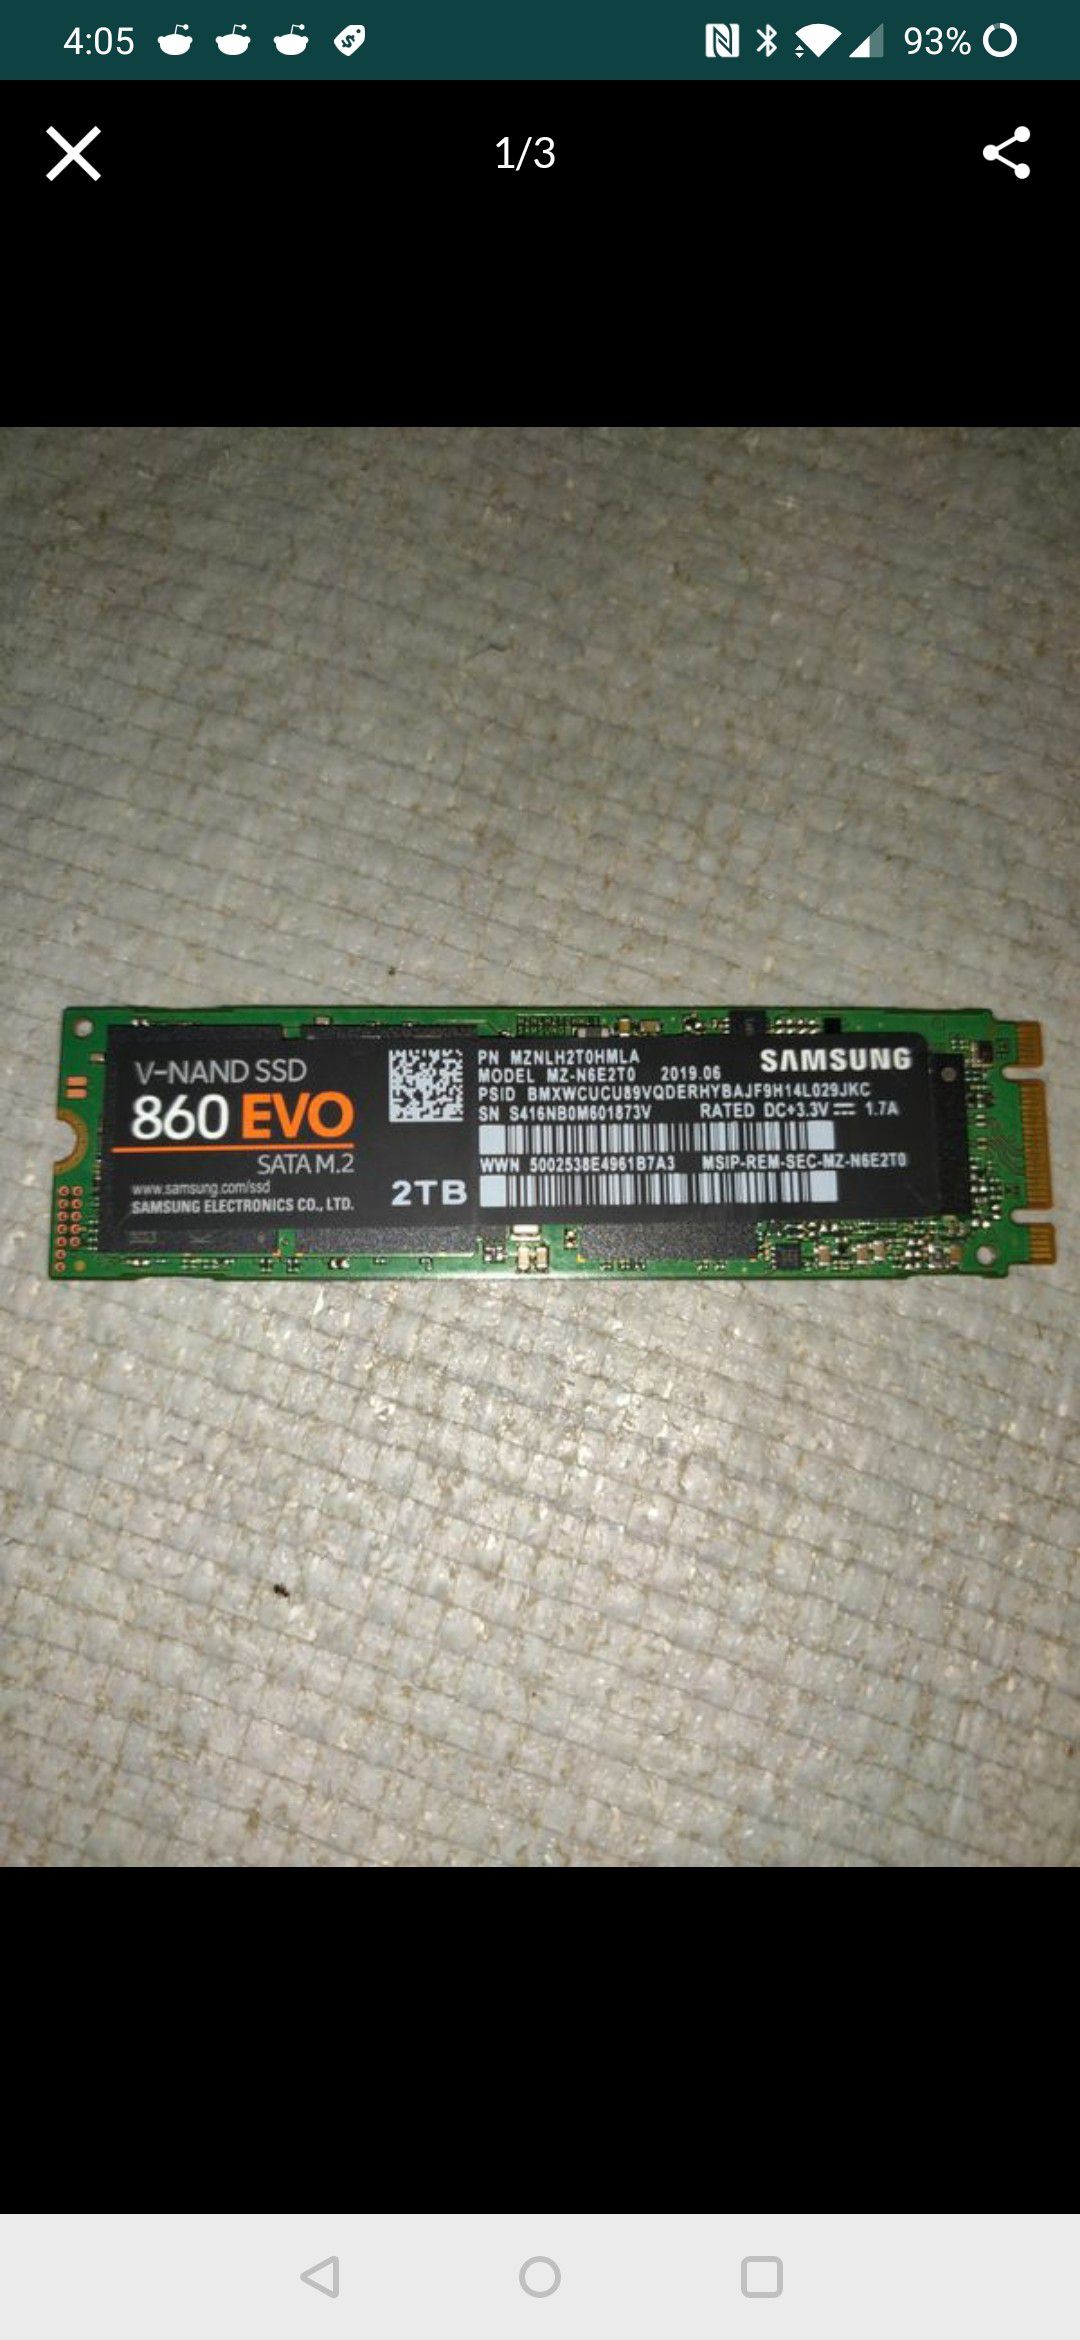 Samsung 860 Evo 2 TB m.2 SATA SSD drive and pioneer 1tb SATA SSD drive